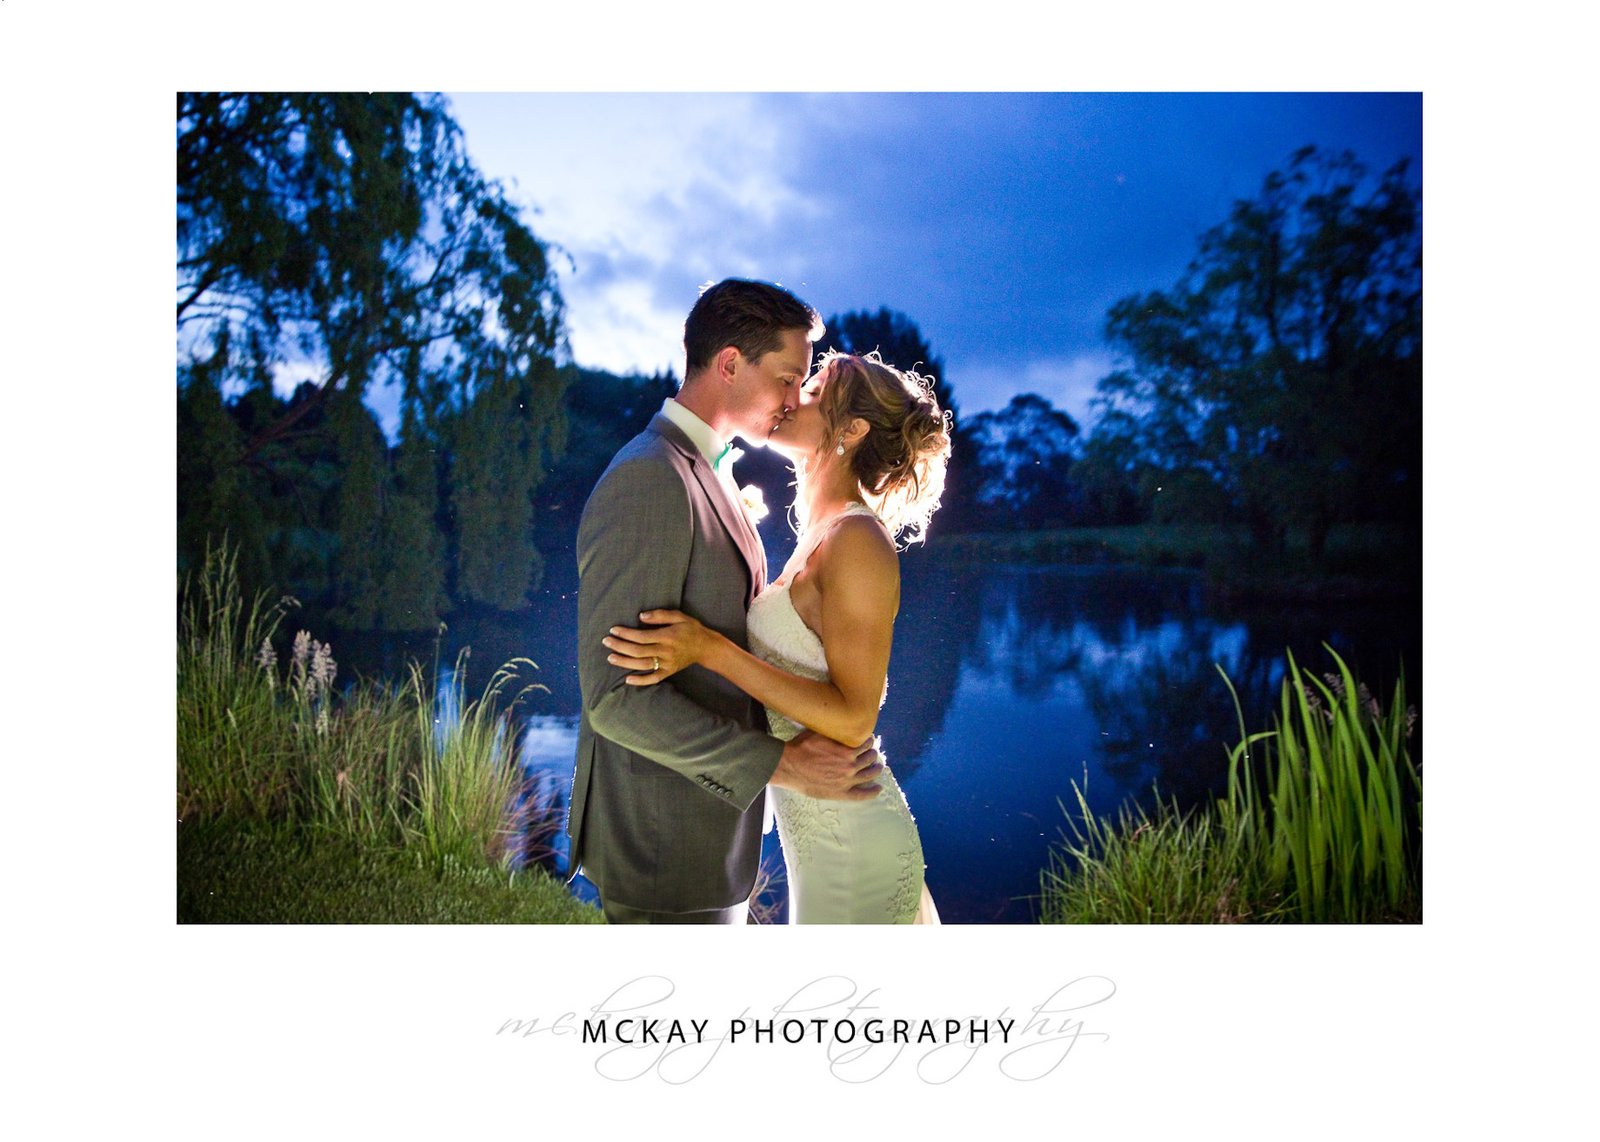 Flash backlit night shot at Briars lake during wedding in Bowral